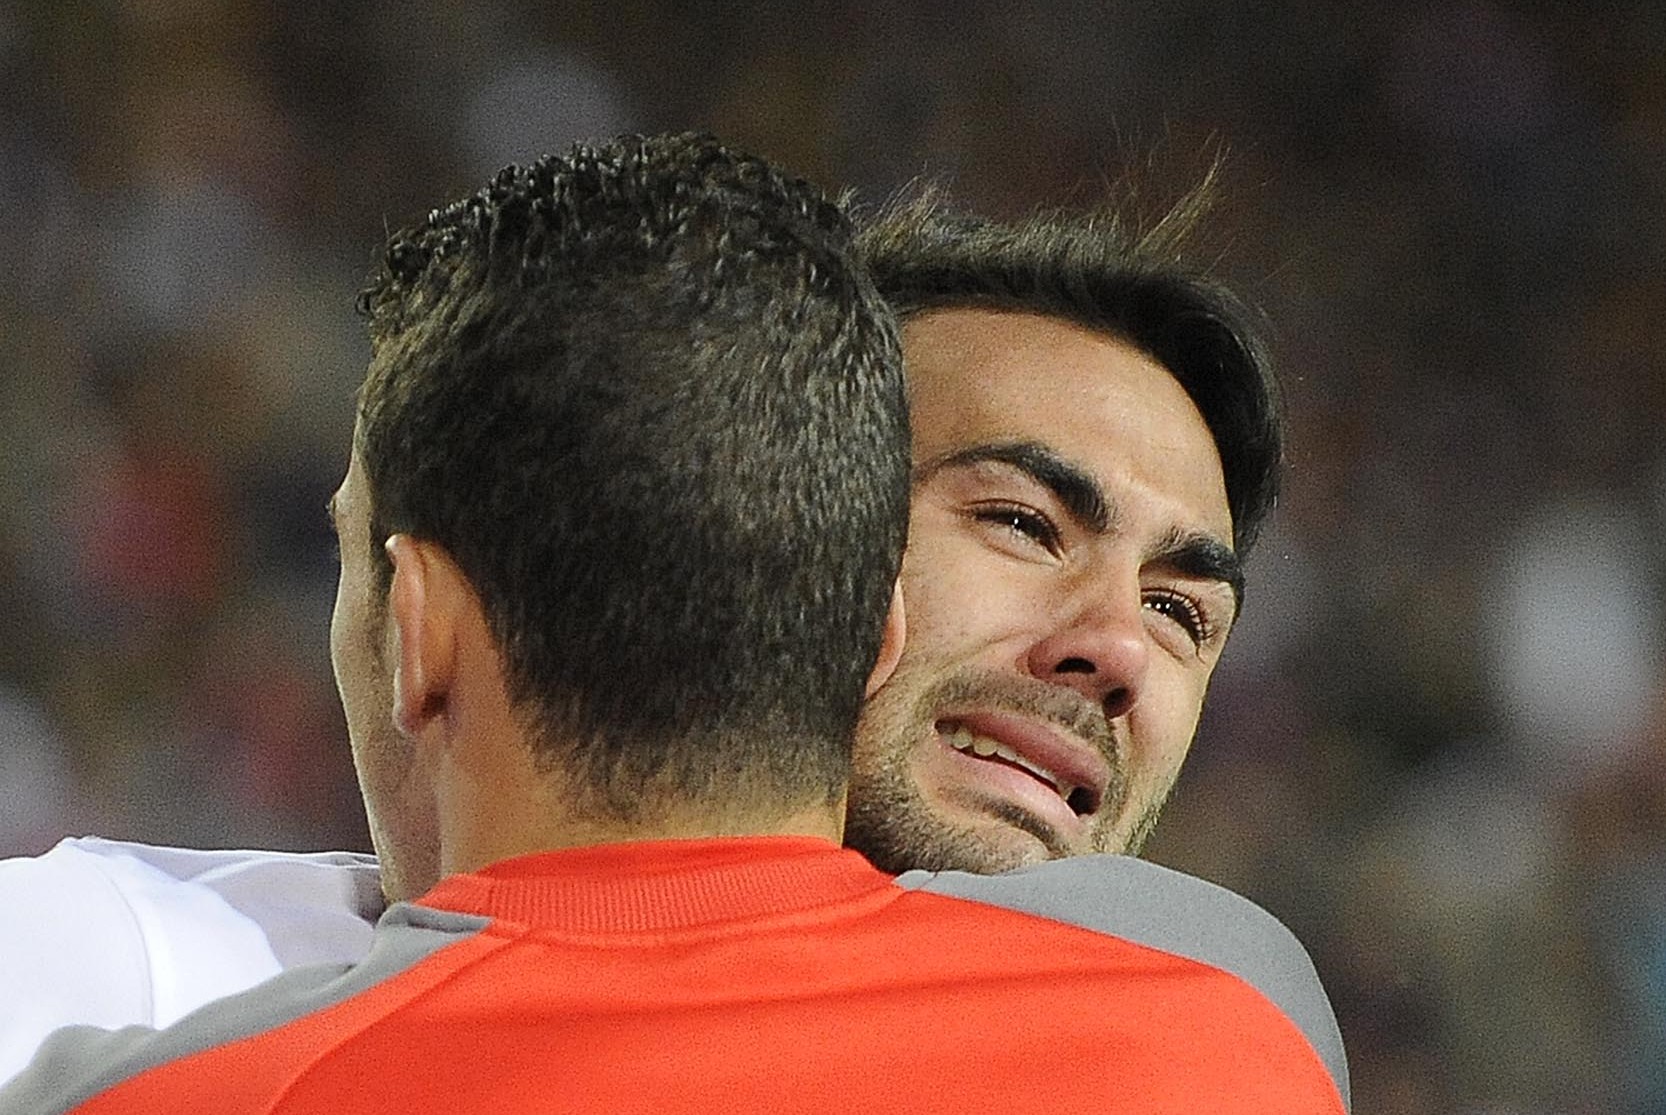 Lágrimas de Iborra en la final de Copa del Rey